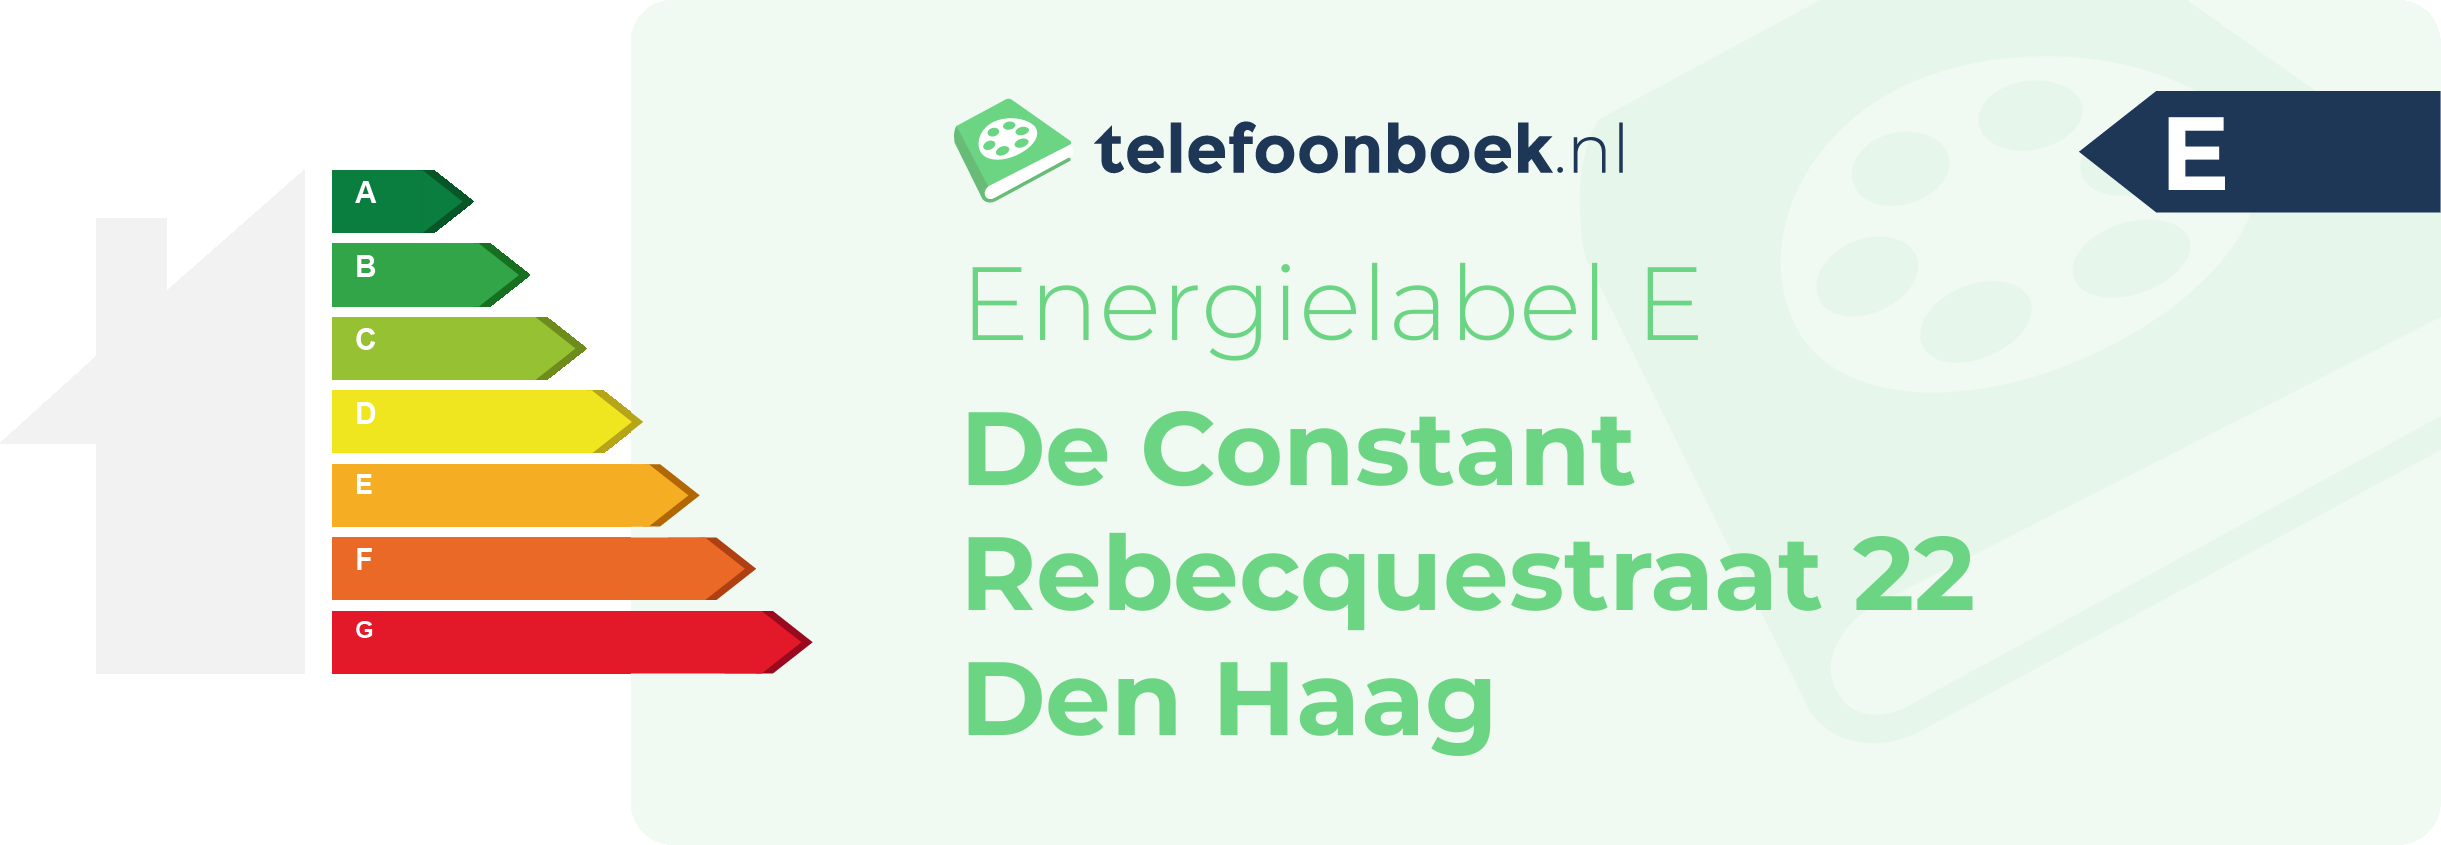 Energielabel De Constant Rebecquestraat 22 Den Haag